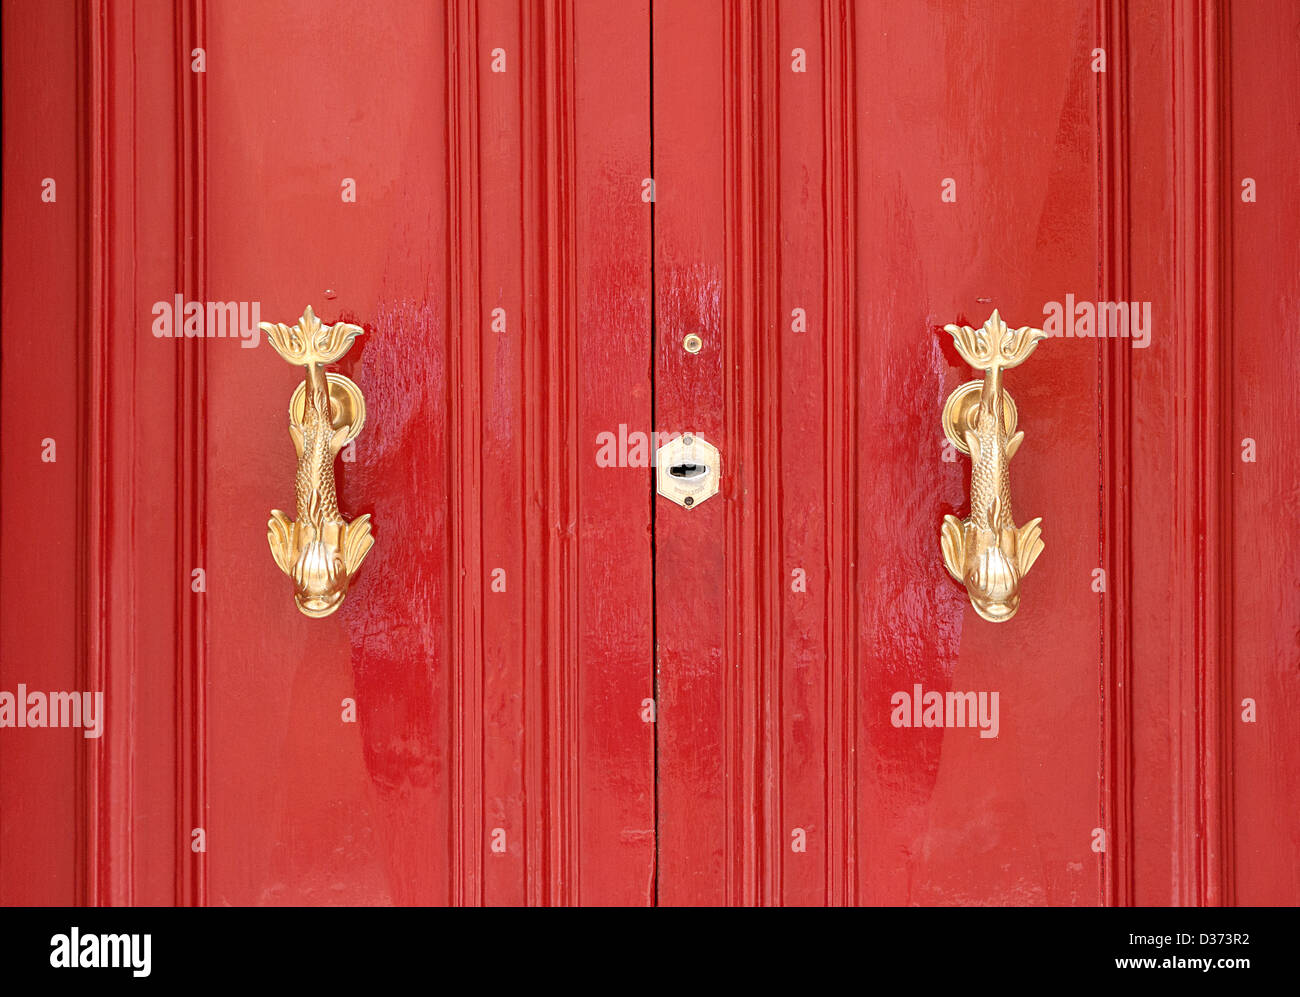 Zwei Messing Türklopfer in Form von Fisch auf eine helle rote Tür. Stockfoto